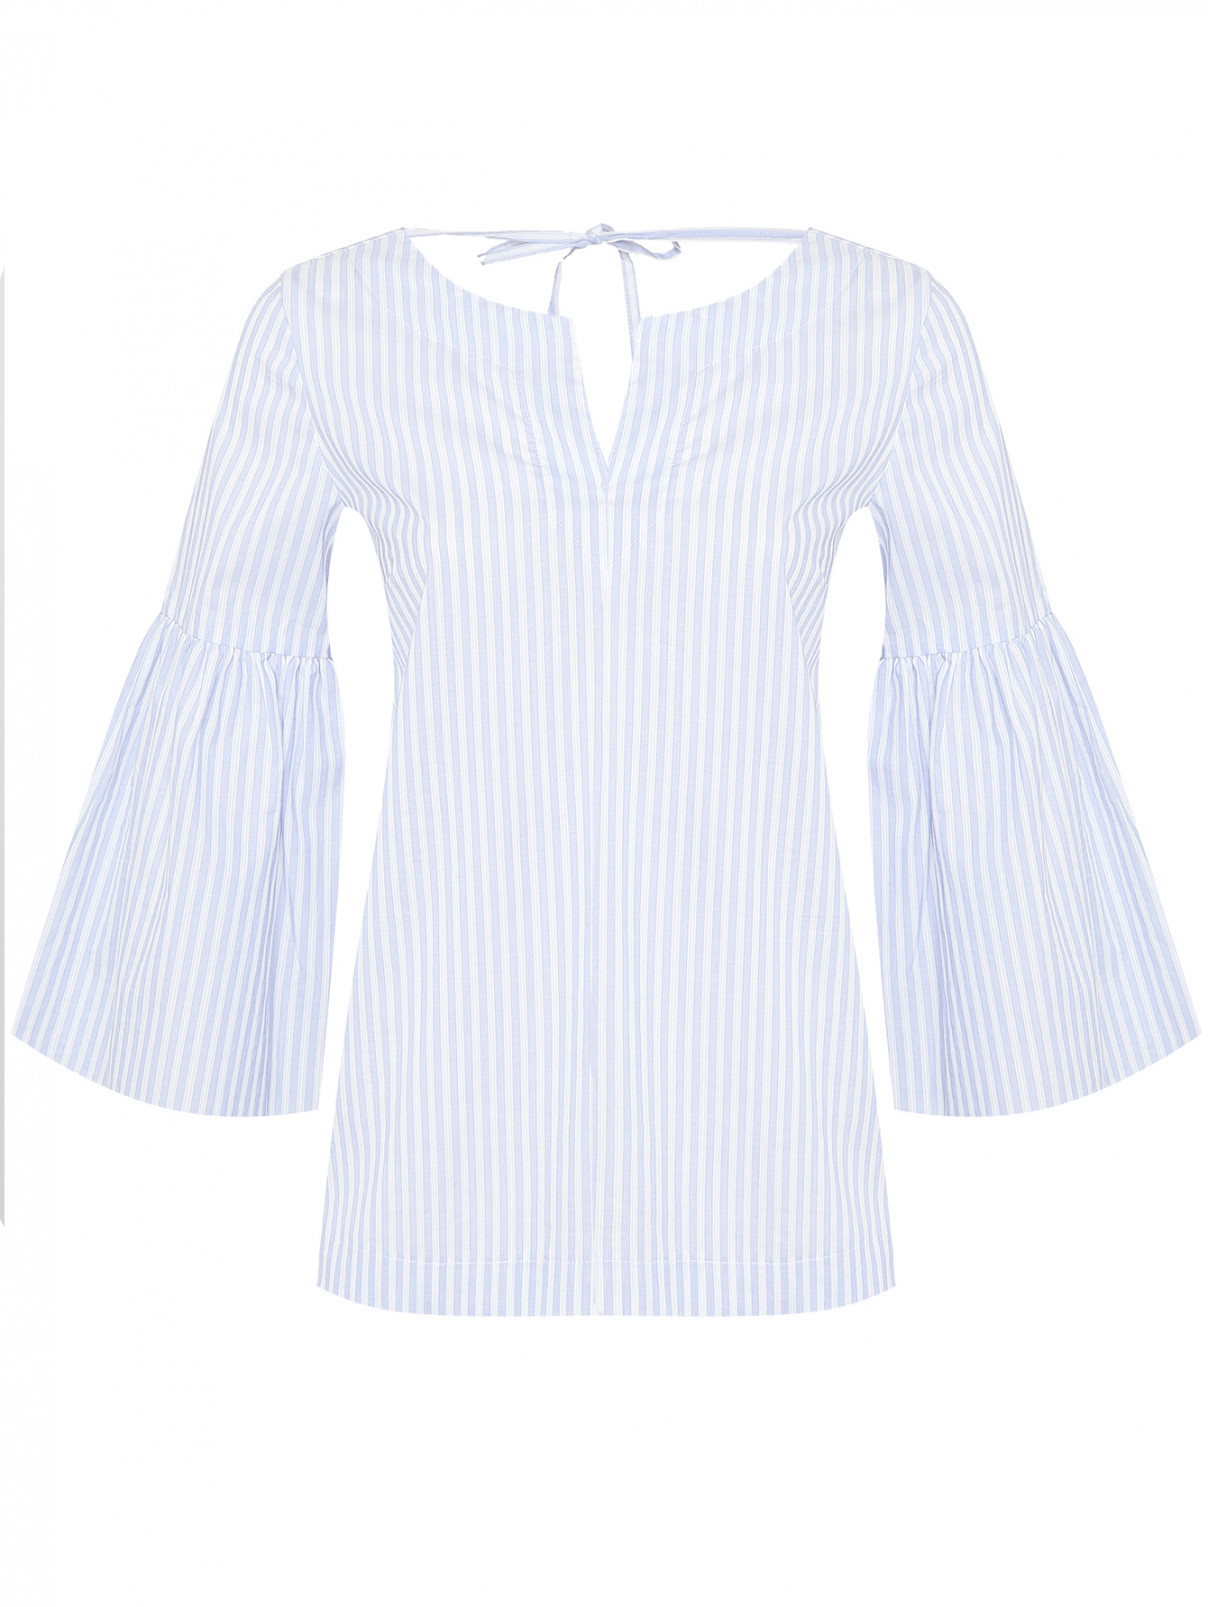 Блуза из хлопка в полоску Caractere  –  Общий вид  – Цвет:  Белый